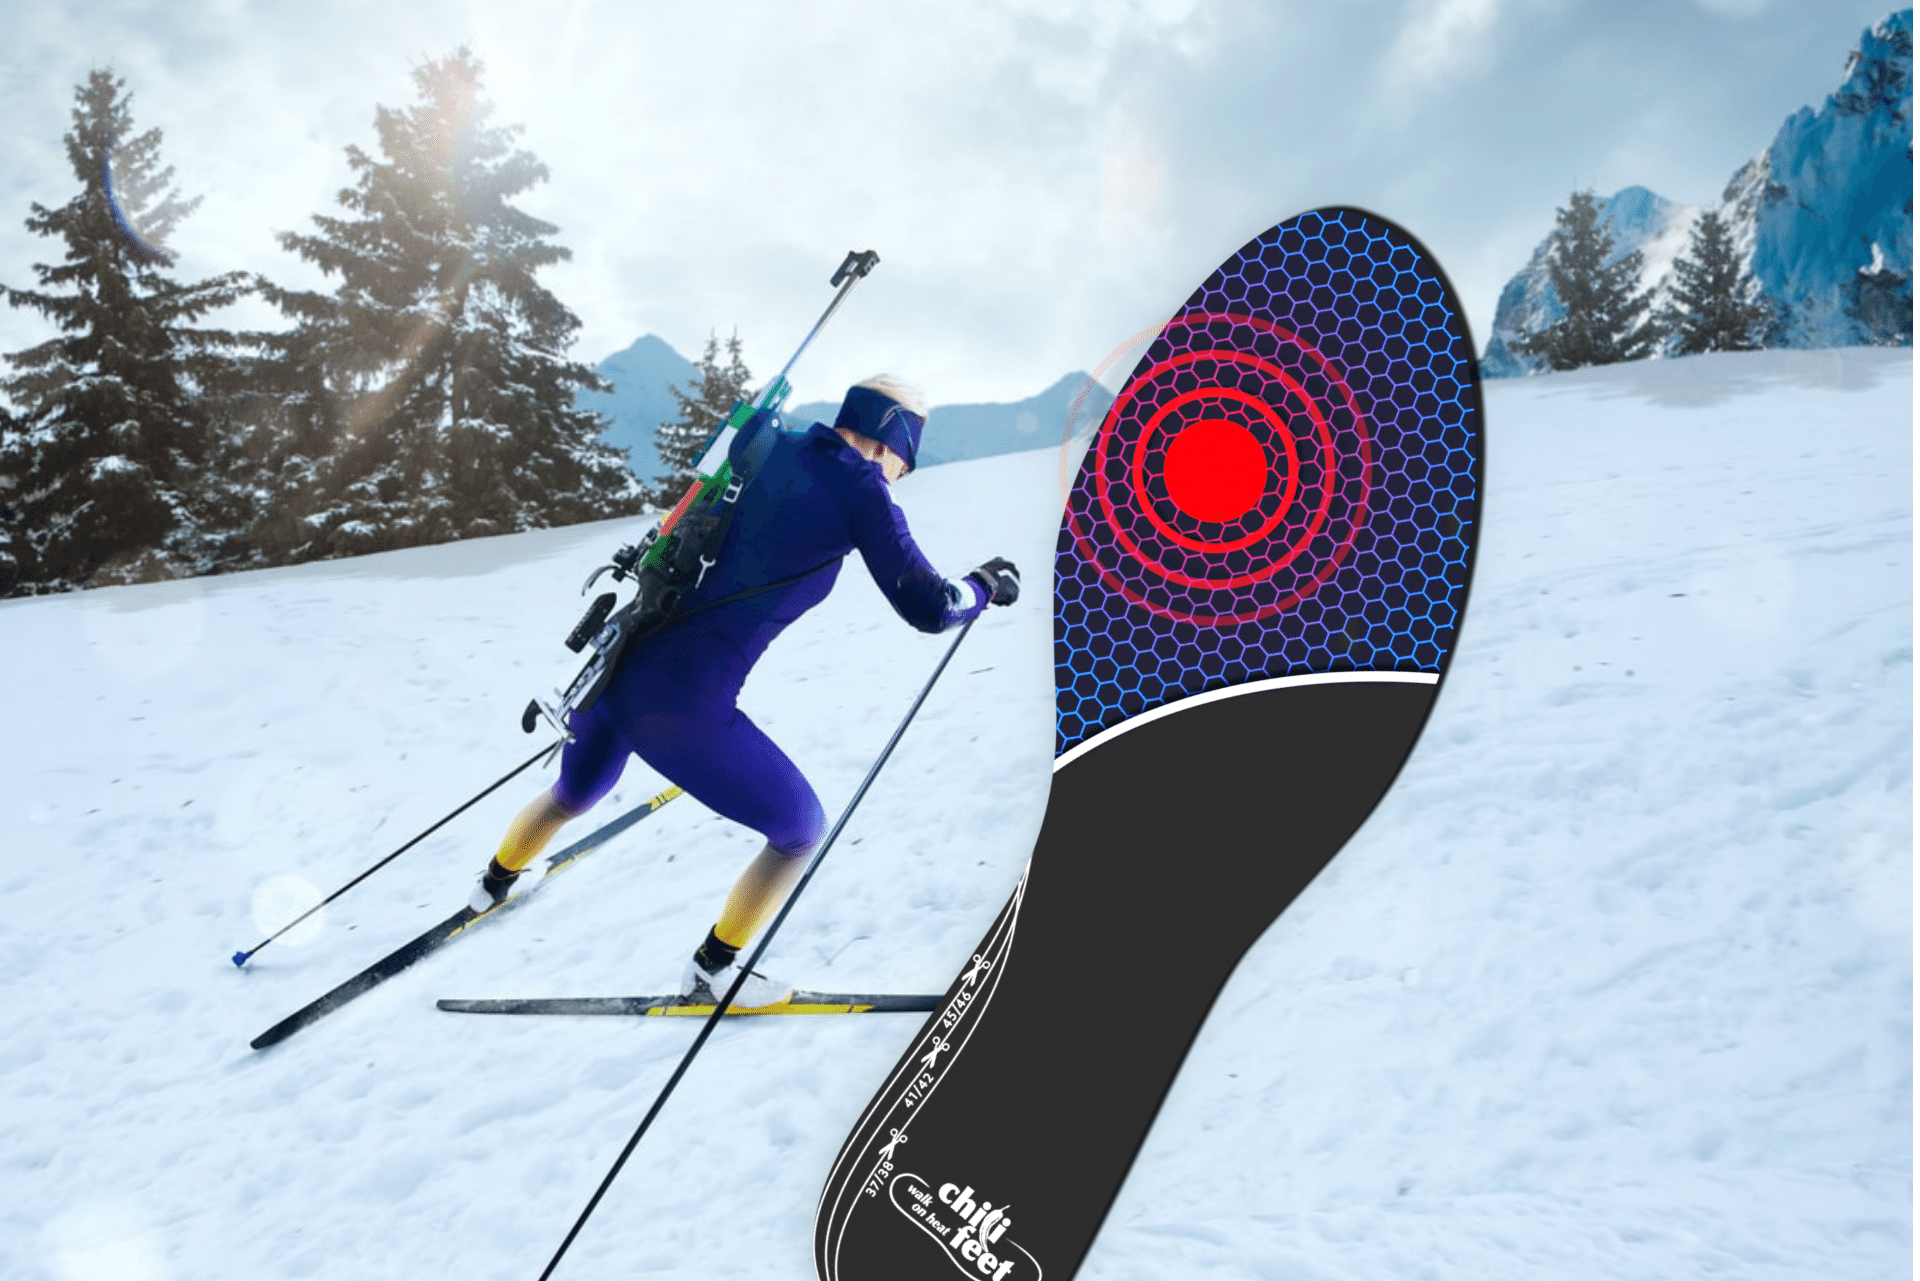 Titelbild eines Spitzensportlers im Biathlon mit der chili-feet Wärmesohle eingeblendet